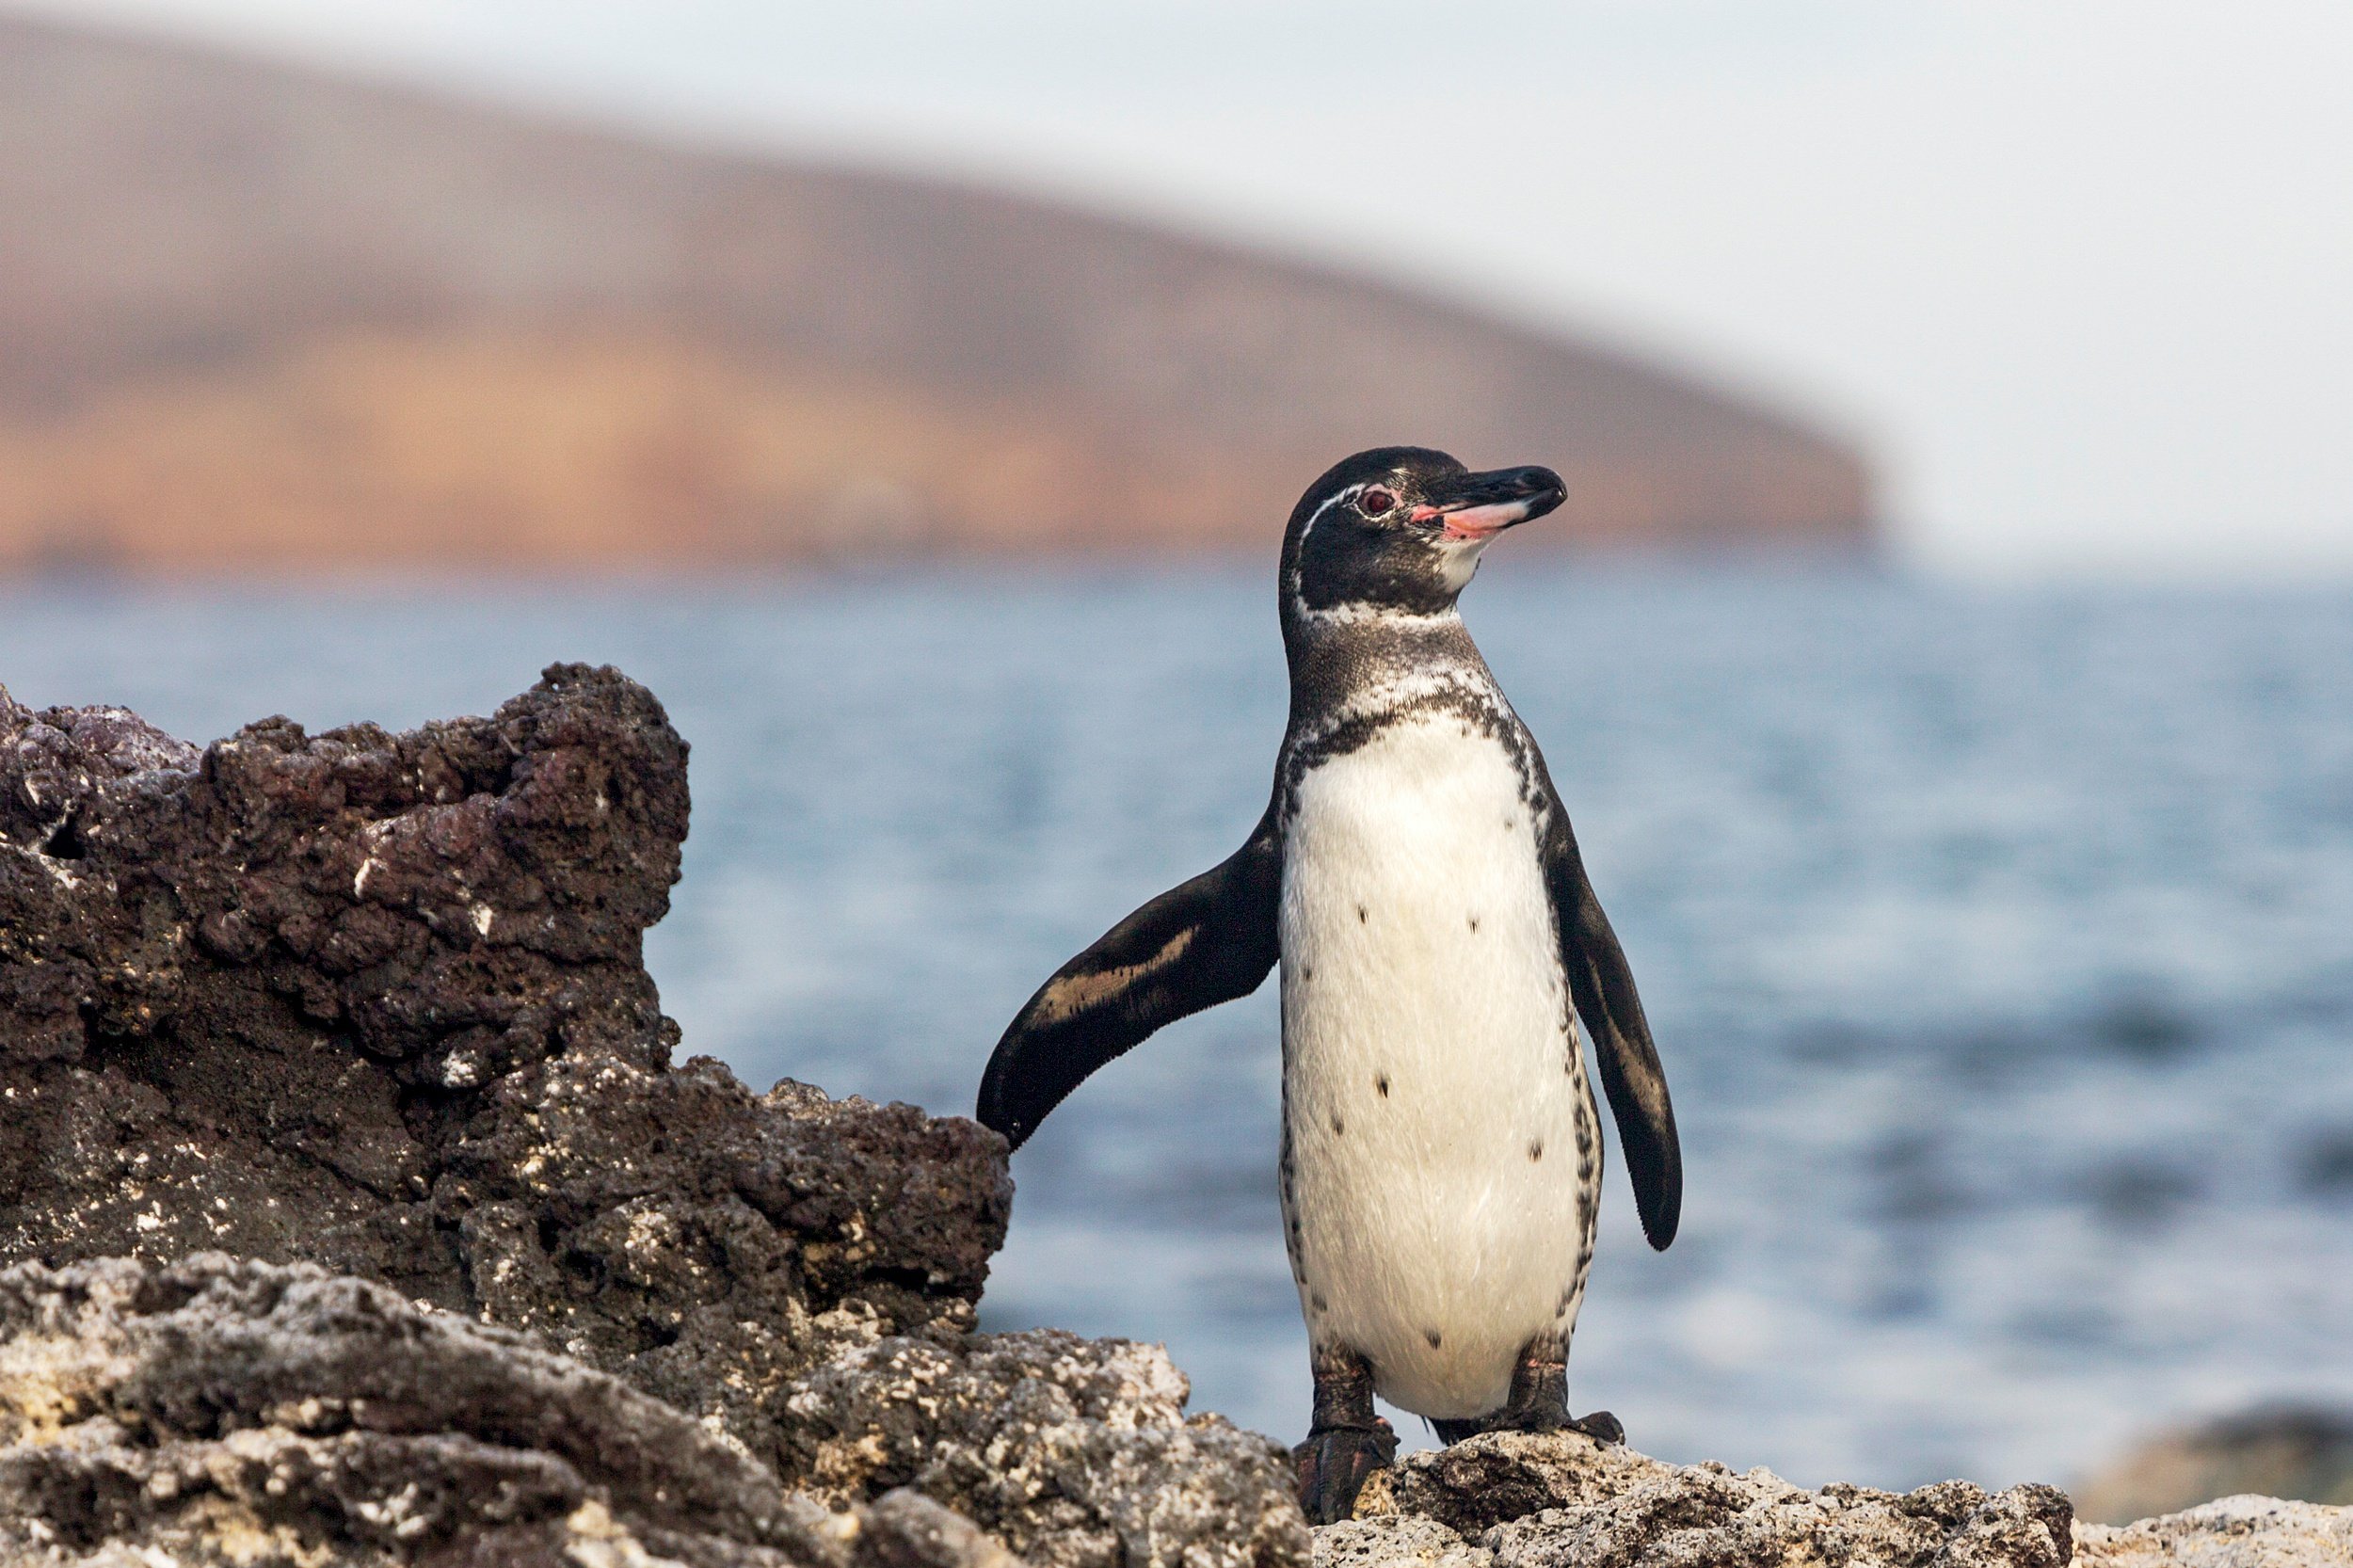 Galapagos Penguin at Bartolome-8.jpg